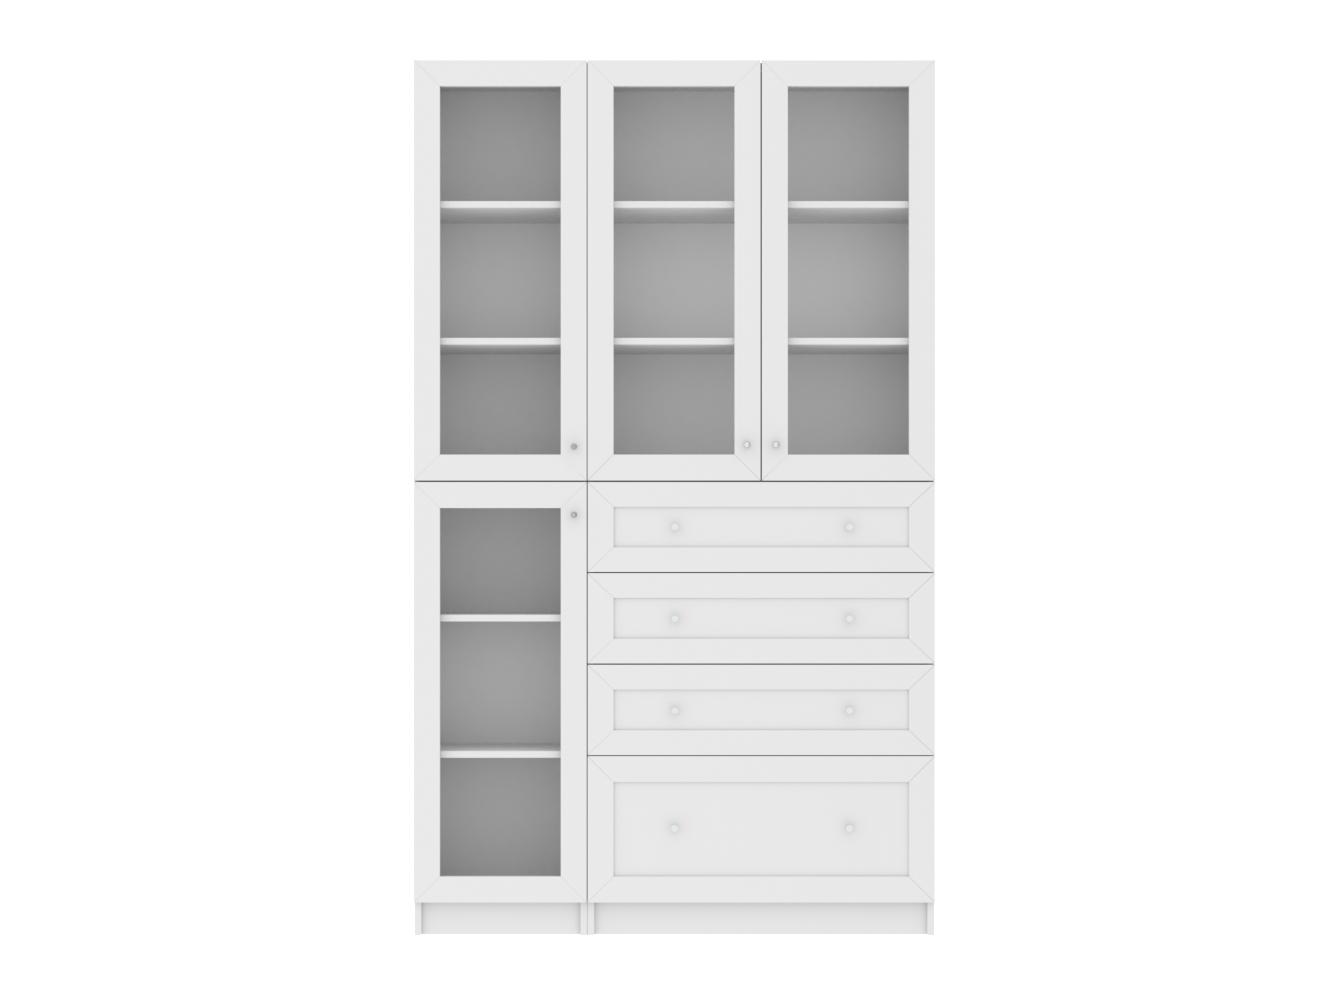 Изображение товара Книжный шкаф Билли 358 white ИКЕА (IKEA), 120x30x202 см на сайте adeta.ru